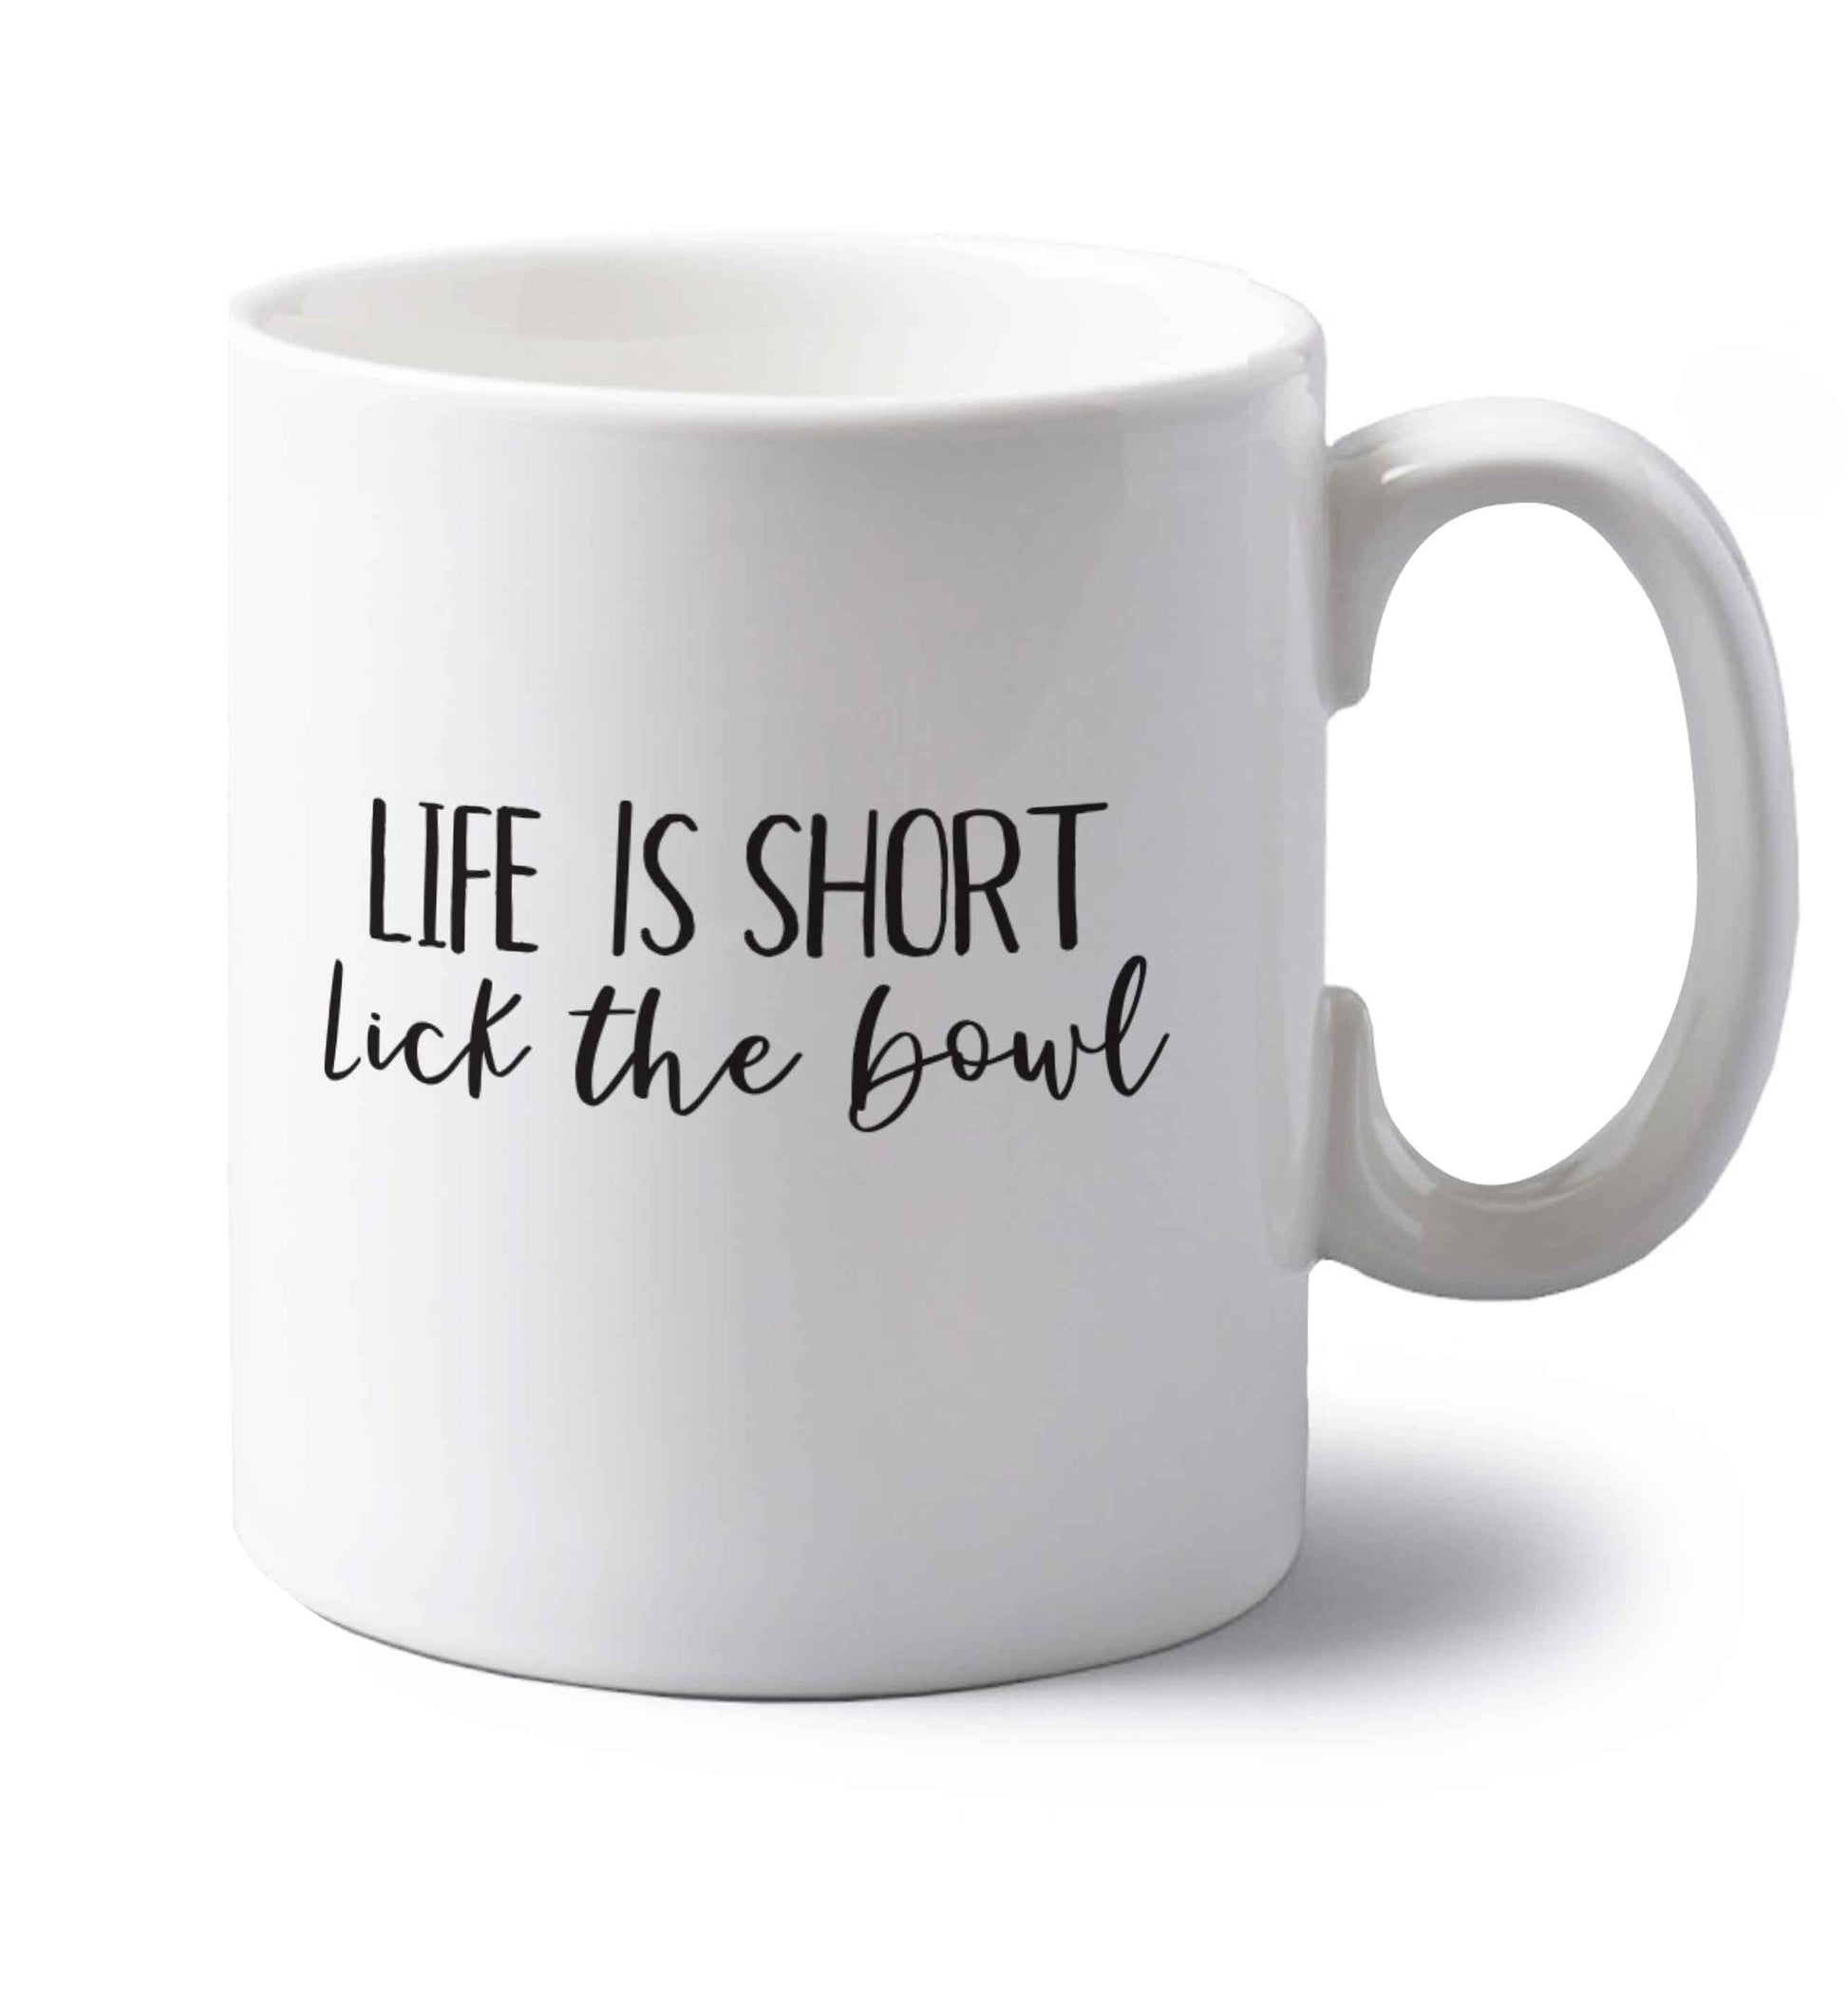 Life is short lick the bowl left handed white ceramic mug 